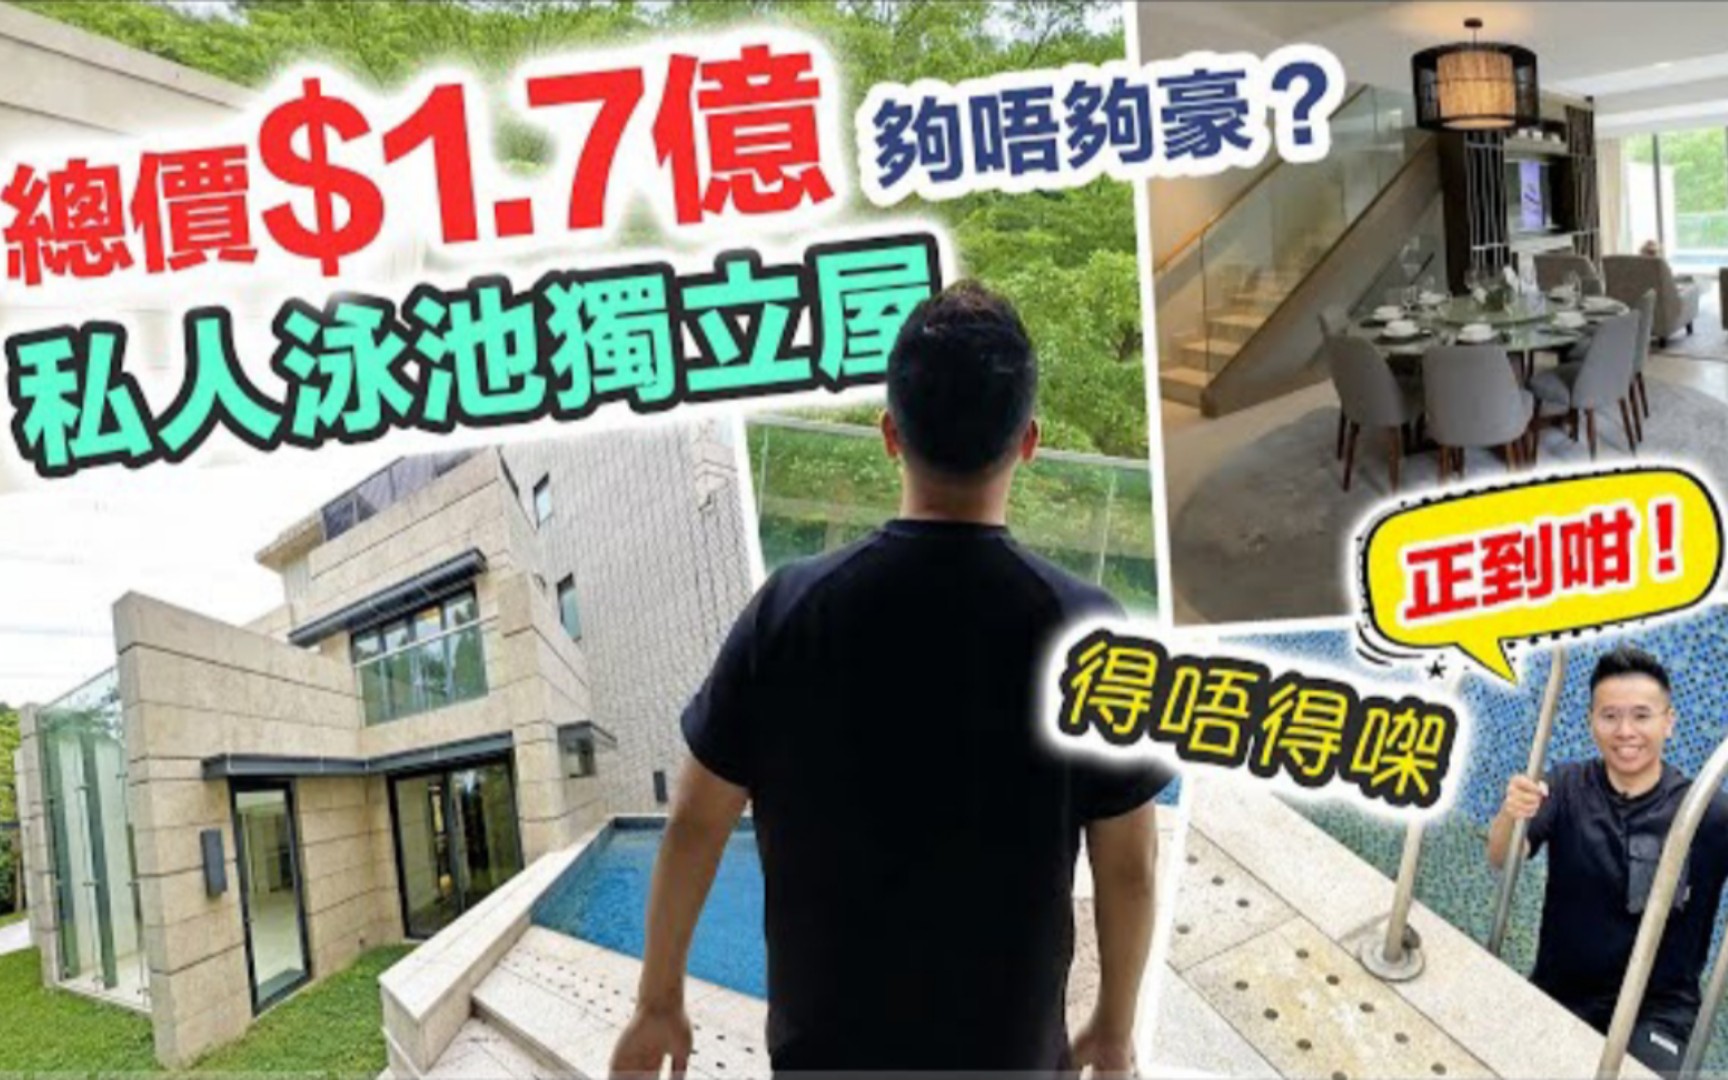 「香港別墅」私人泳池+天池獨立屋🏡玻璃天幕好吸睛🤩花園大到泊六部車🚗廚房可以跳舞💃🏻間間房有套廁🛁兩間總價1.7億